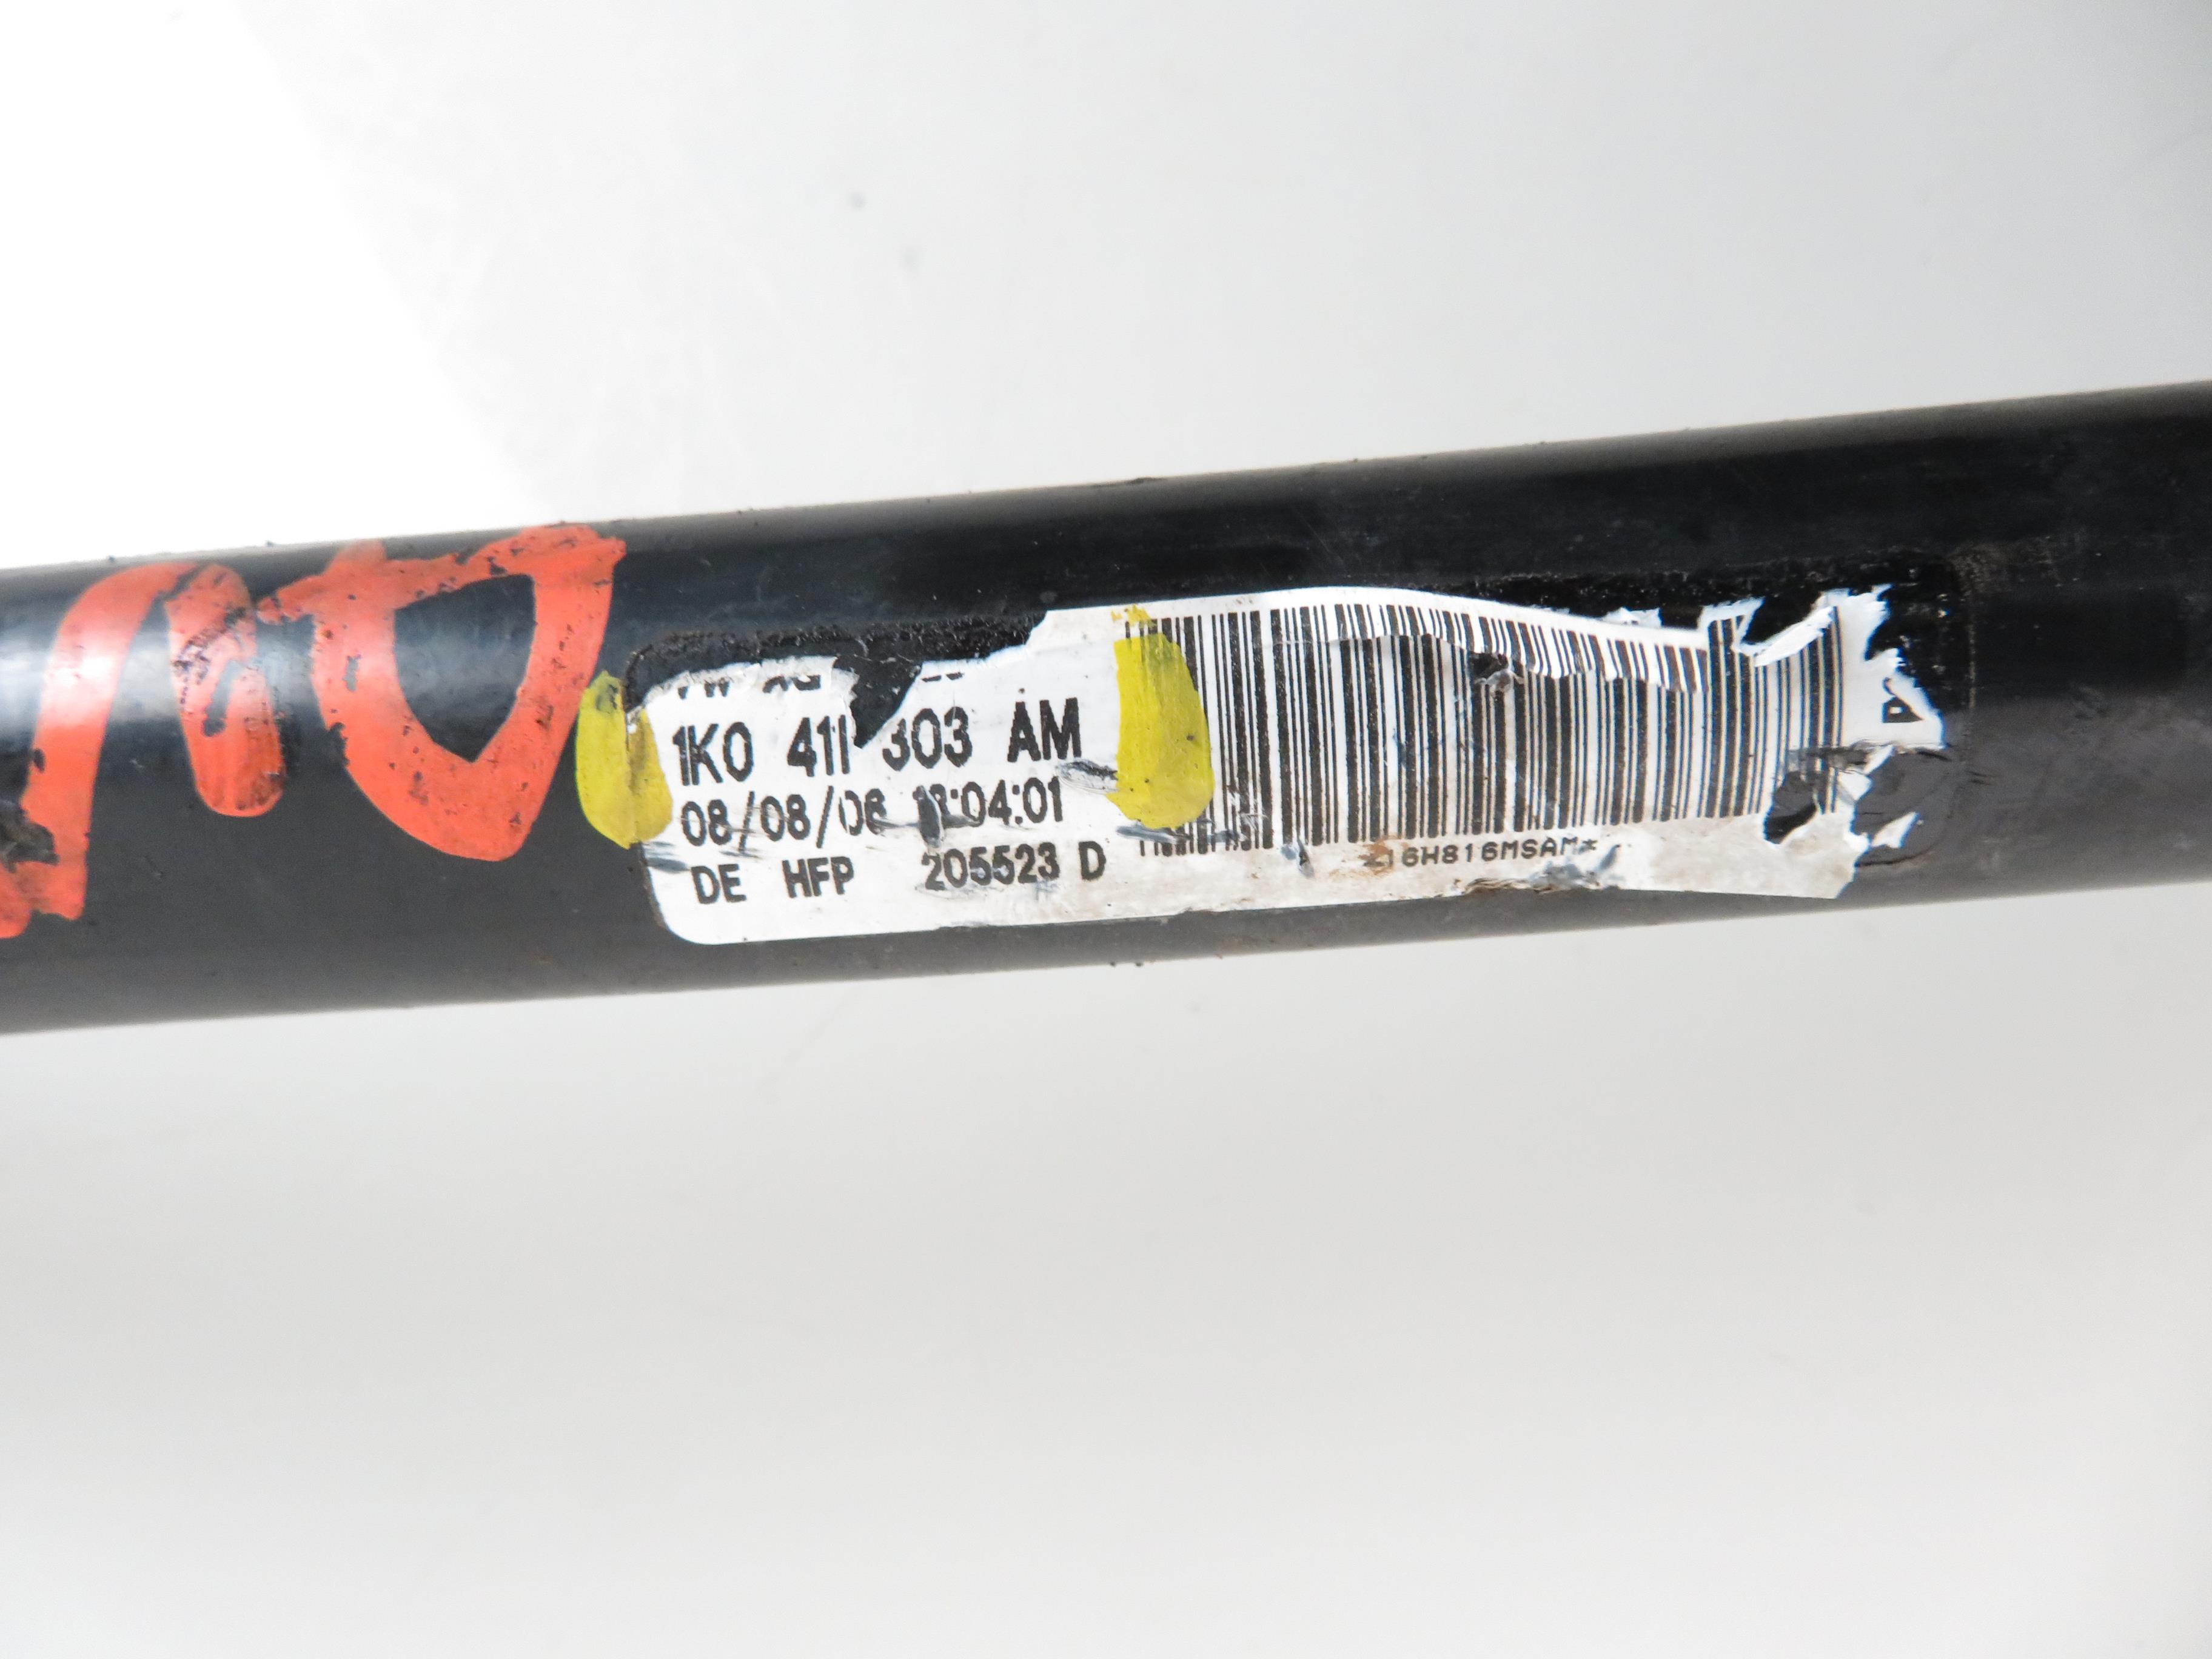 SKODA Octavia 2 generation (2004-2013) Front Anti Roll Bar 1K0411303AM 17795137